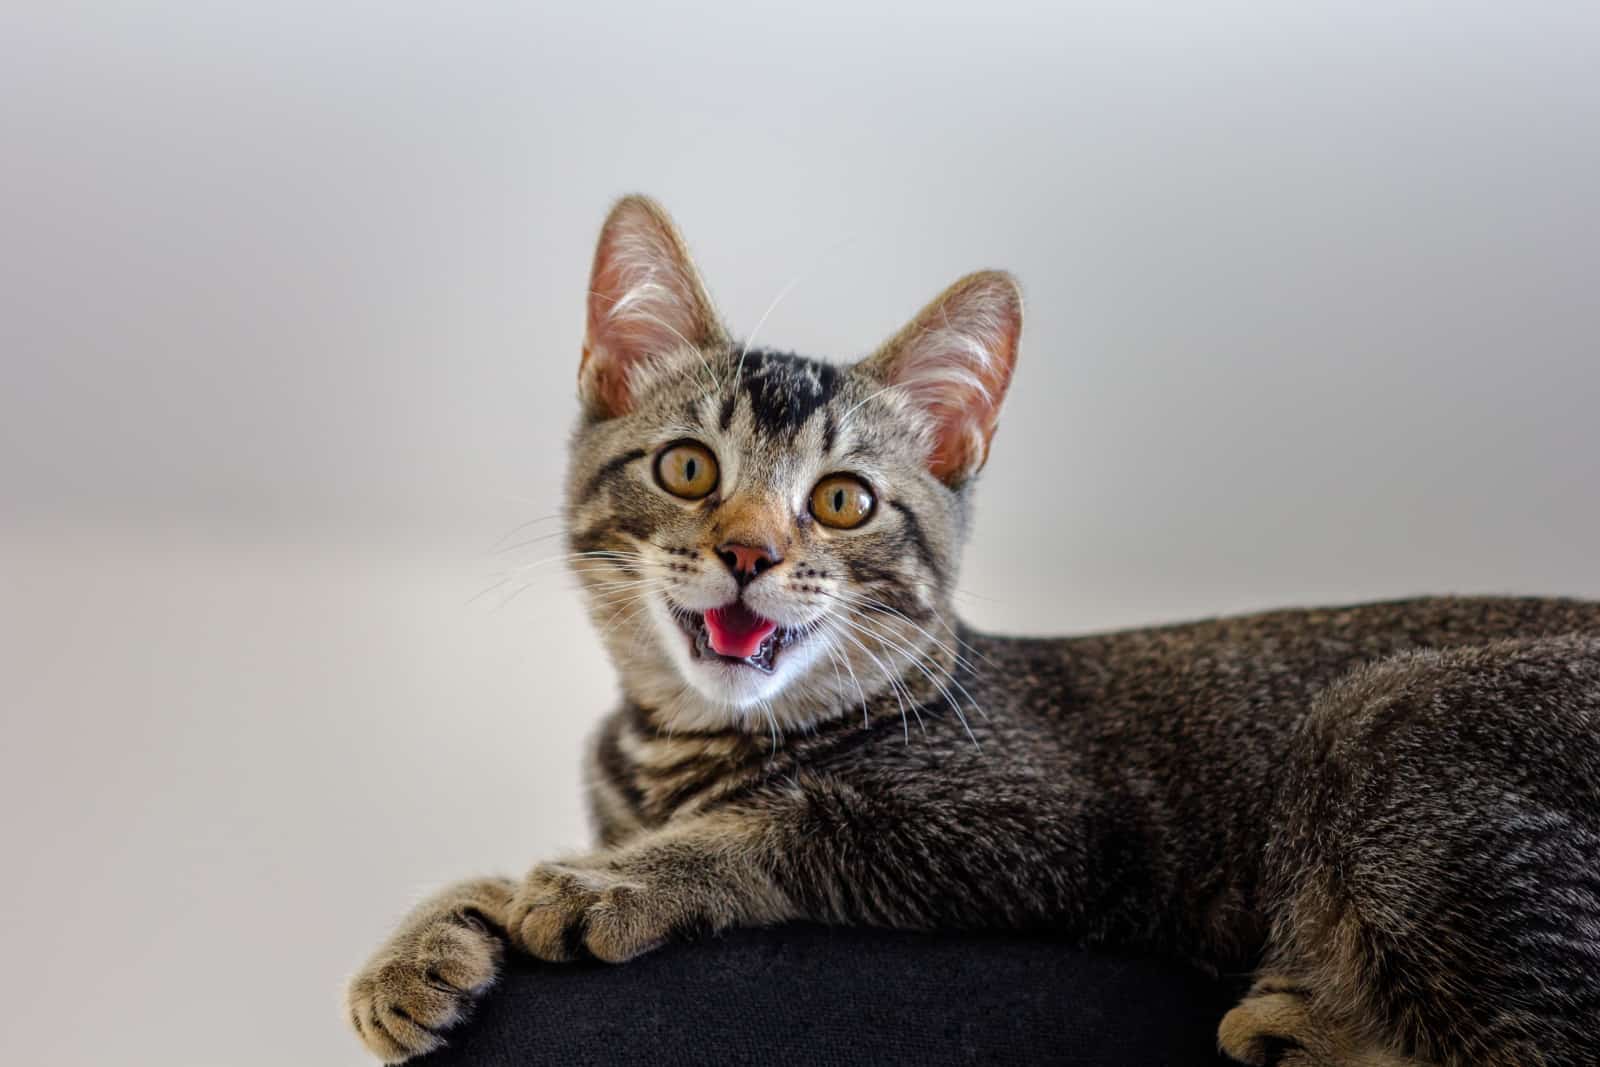 Driekleurige kat met open mond op witte achtergrond die klikkend geluid maakt